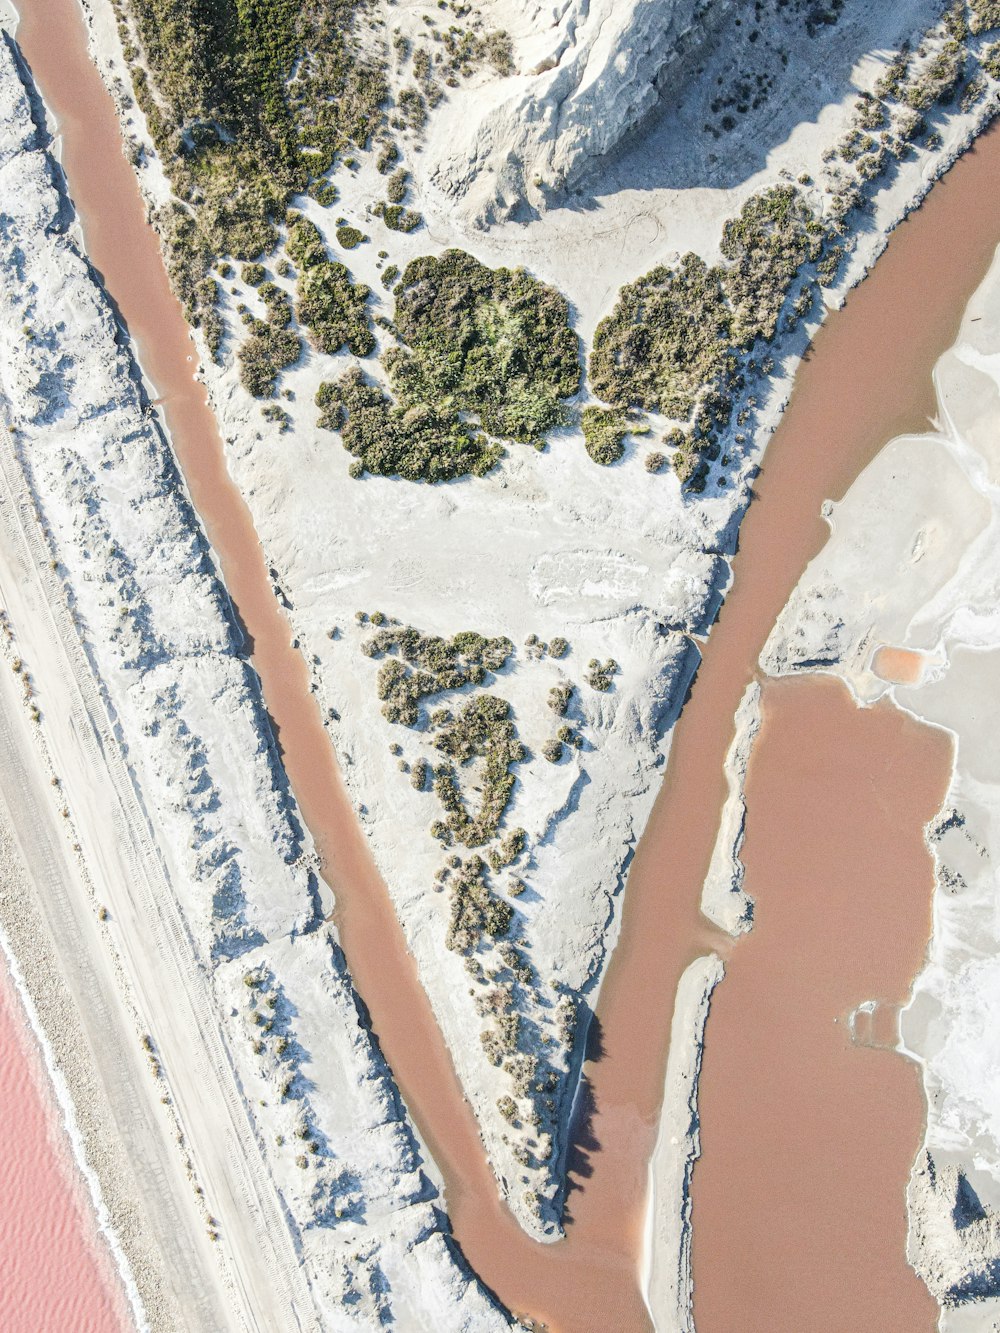 Vista aérea de la masa de agua durante el día